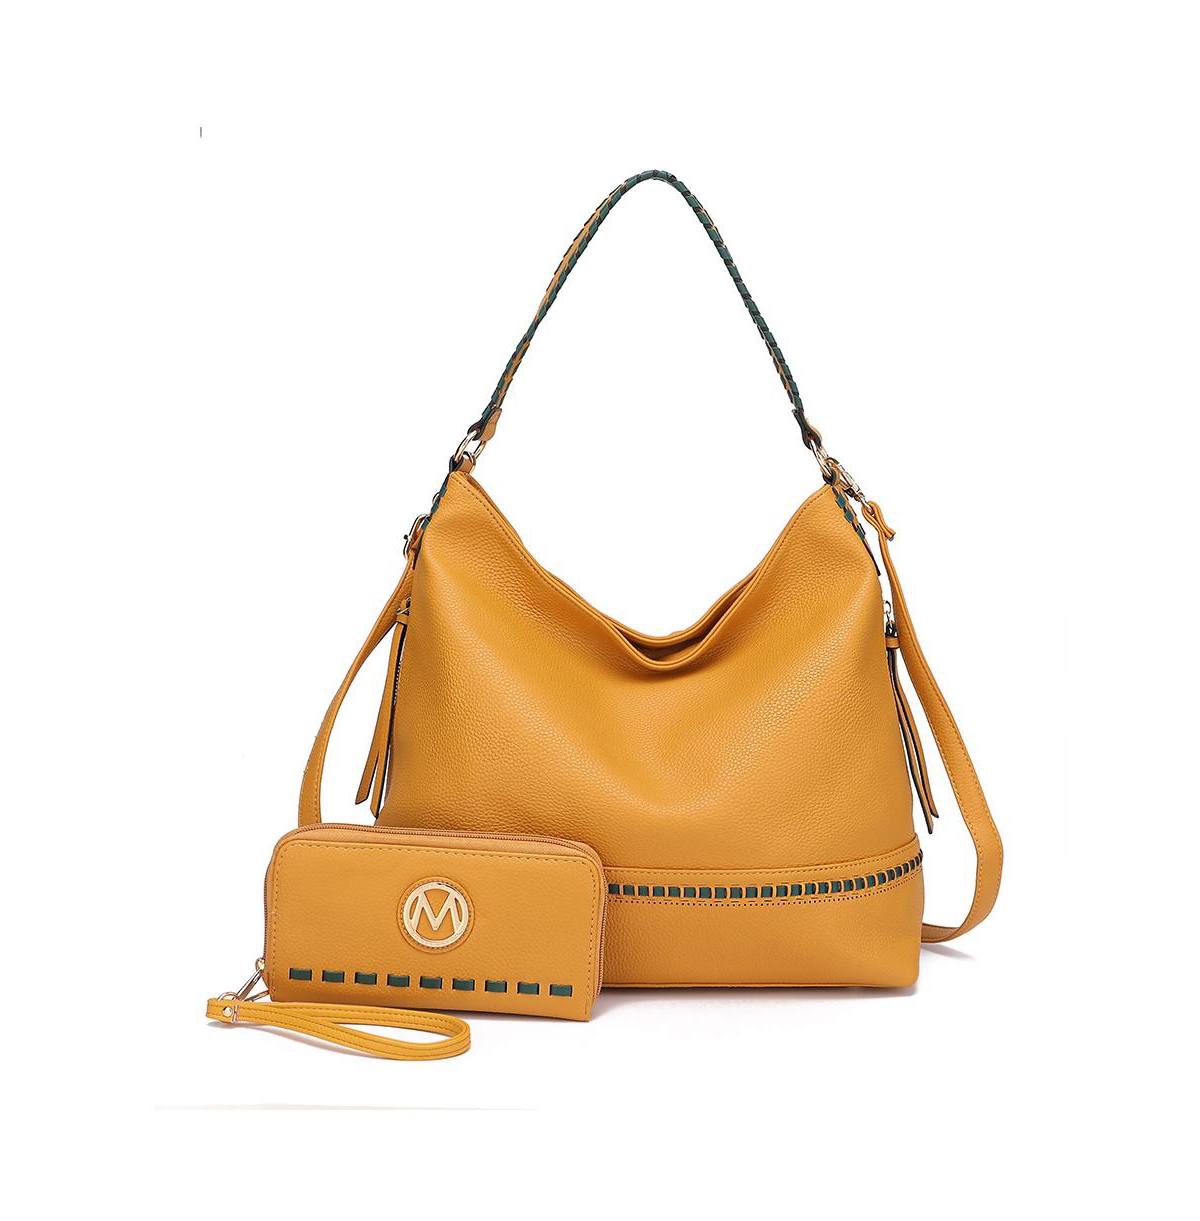 Blake 2Pcs Women's Shoulder bag with Wallet by Mia K - Yellow